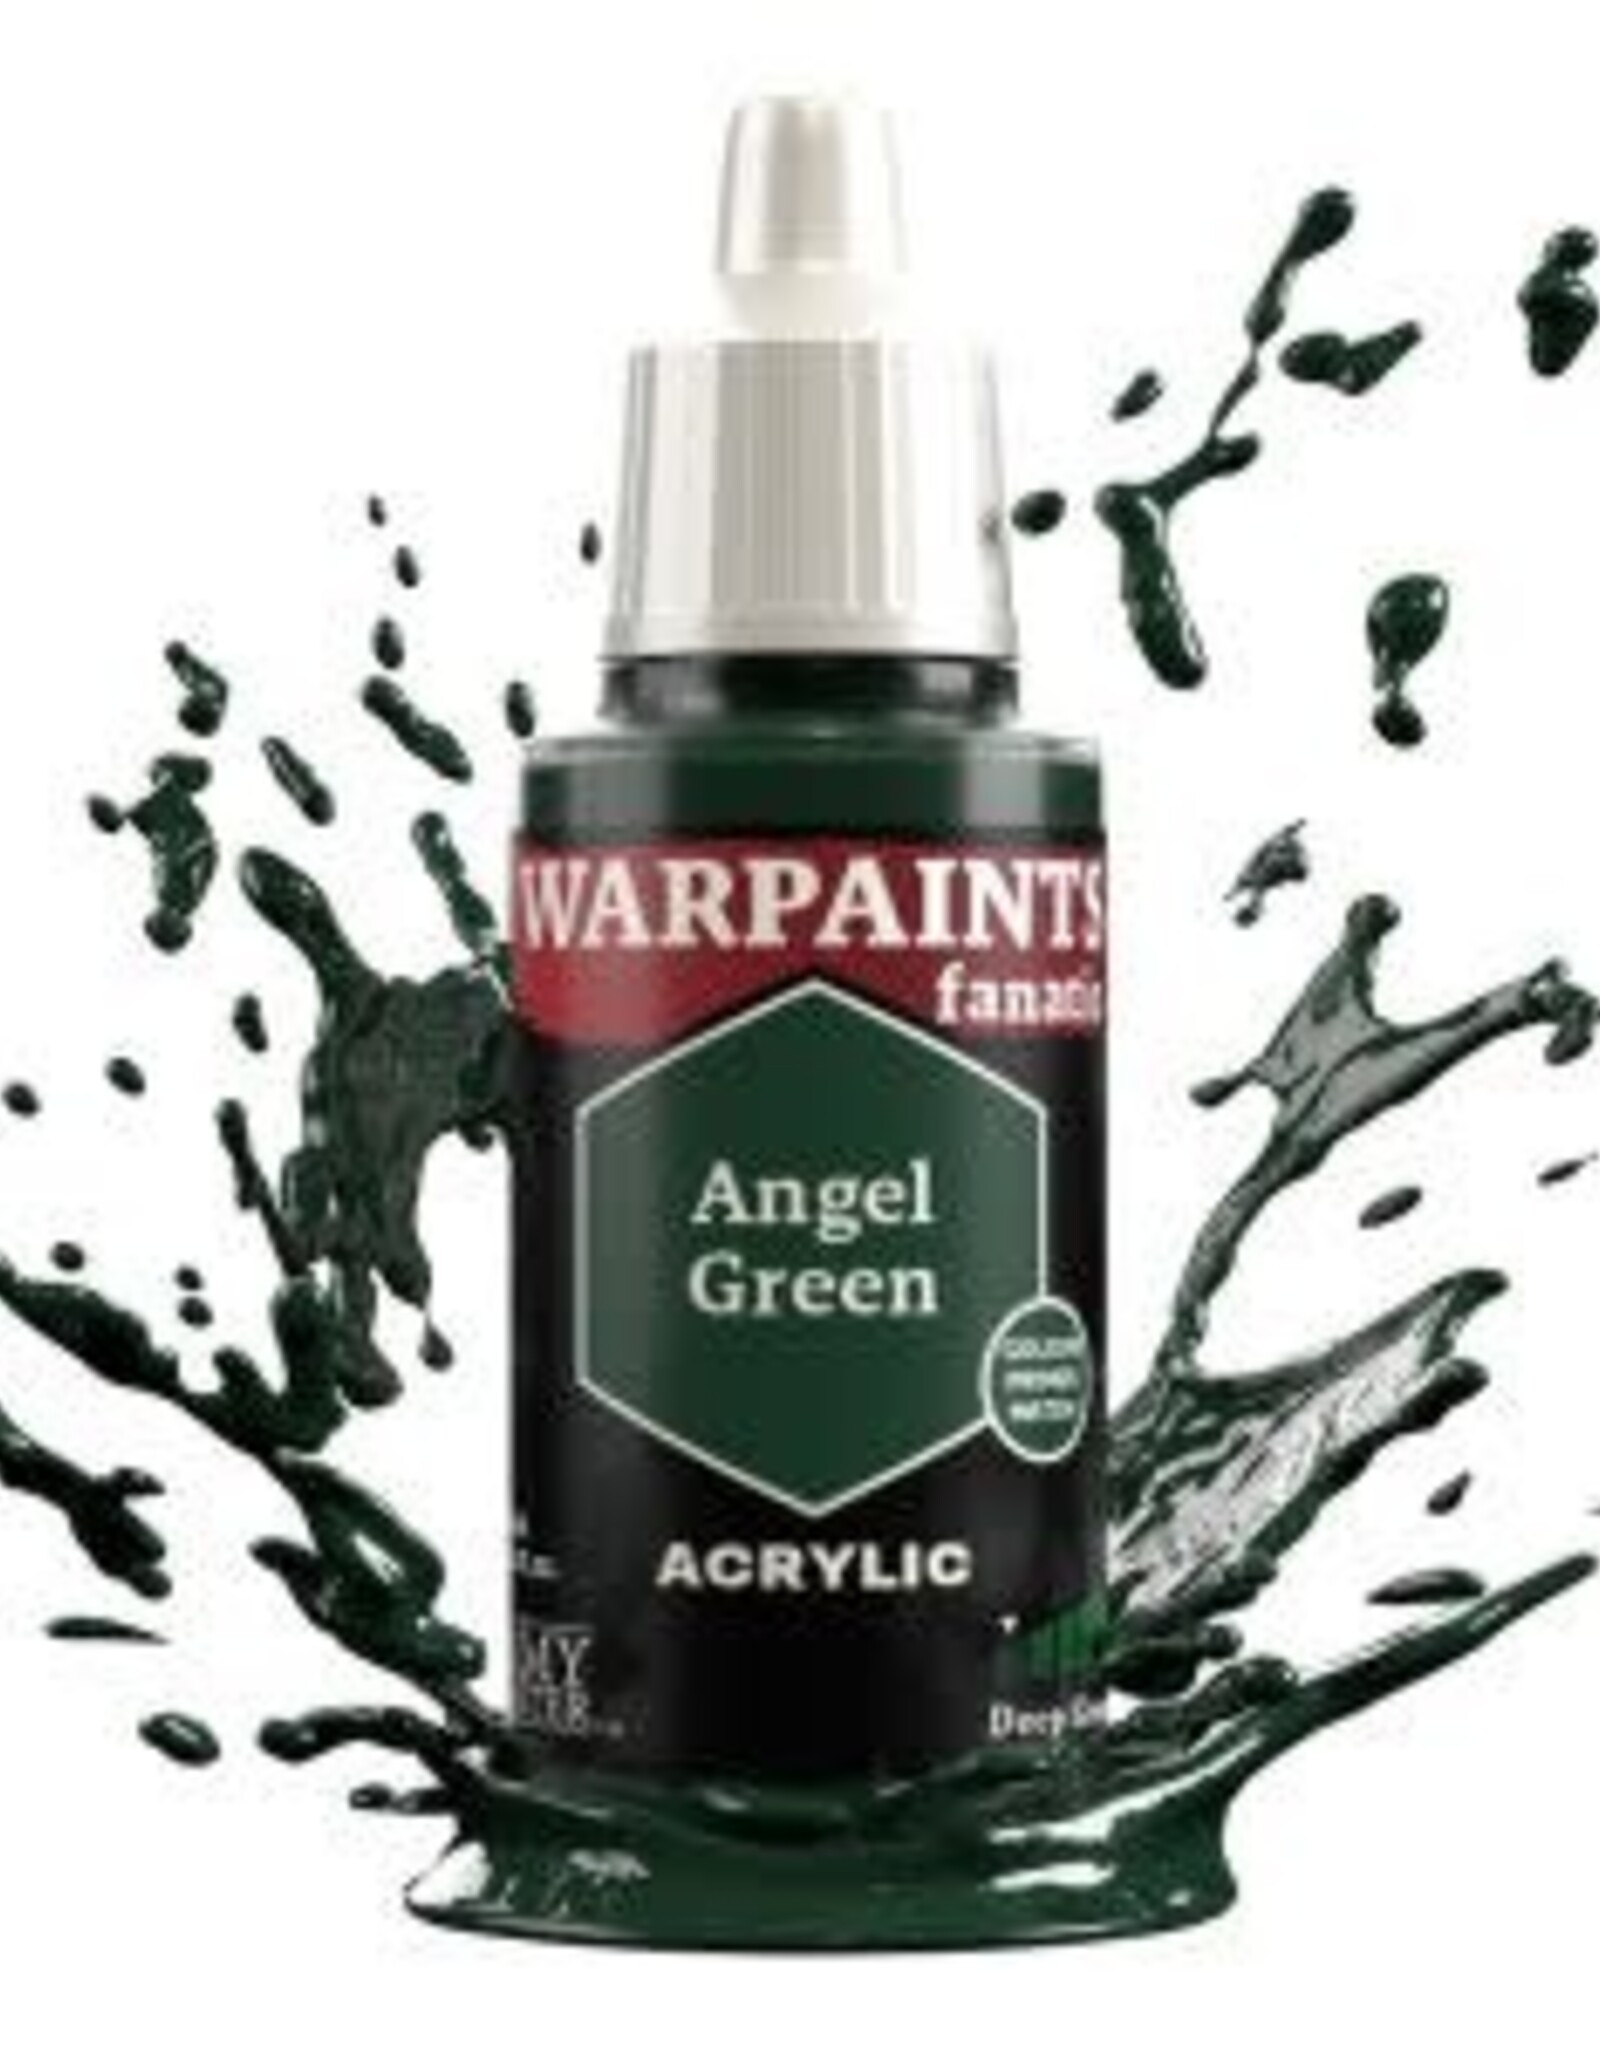 Warpaints Fanatic: Angel Green